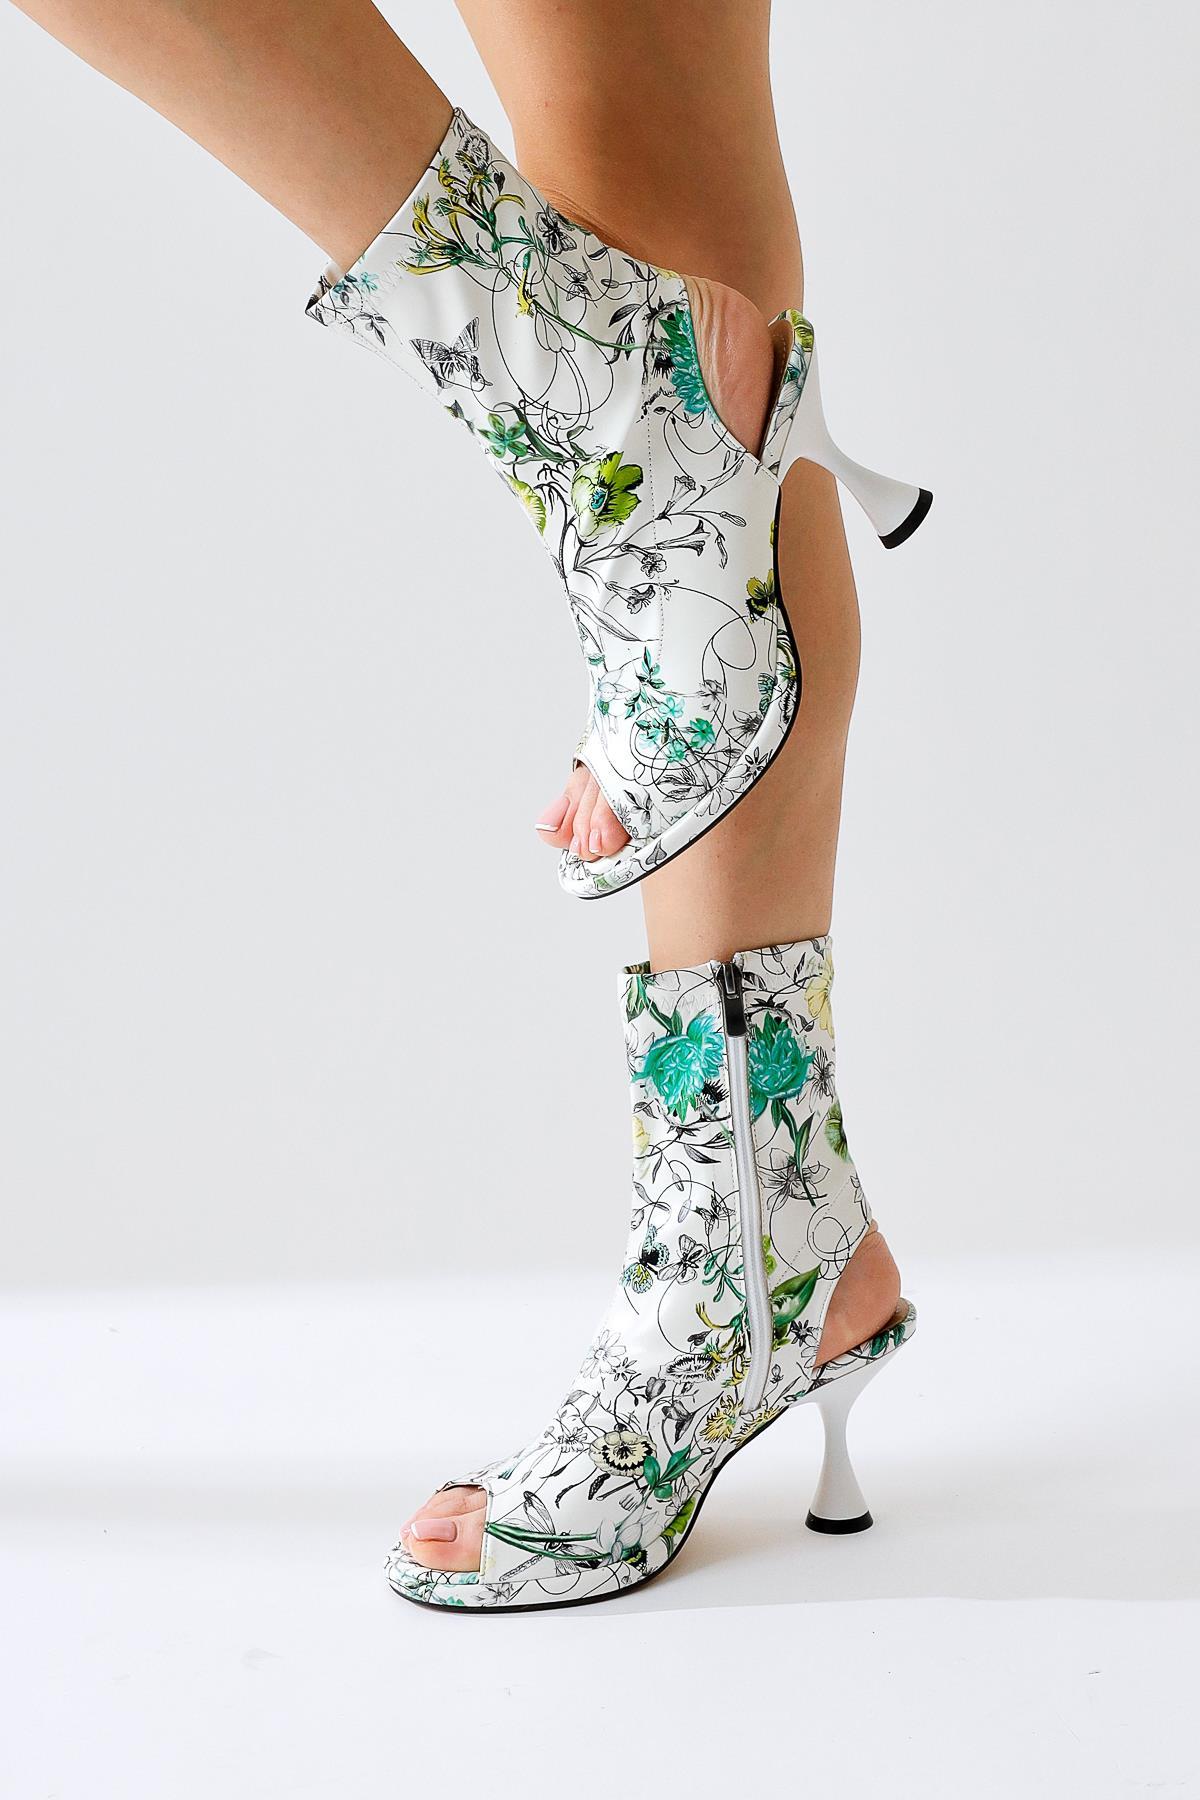 Hansy Beyaz Floral Baskılı Burun-Topuk Dekolteli Fermuarlı Yazlık Topuklu  Ayakkabı